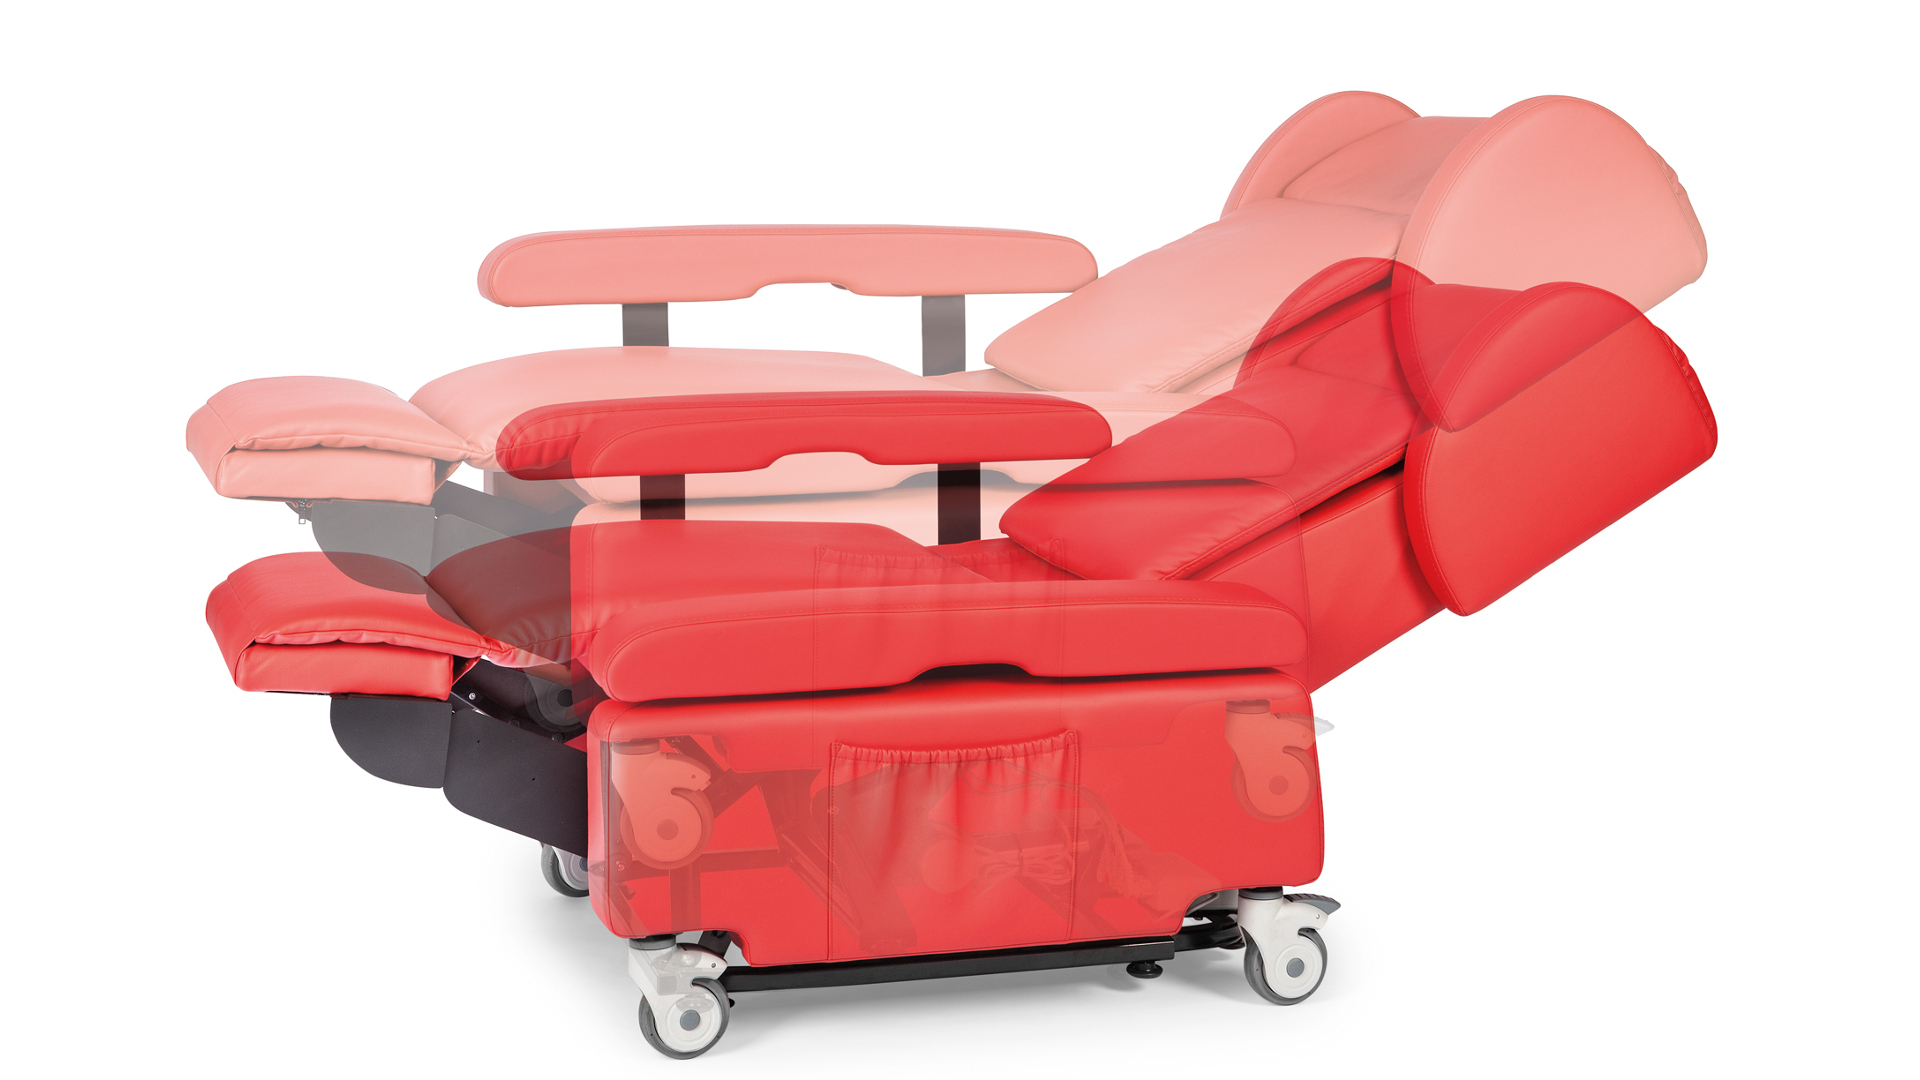 Abbildung eines Sessels in Liegeposition, aus der hervorgeht, dass auch die Sitzhöhe verstellbar ist